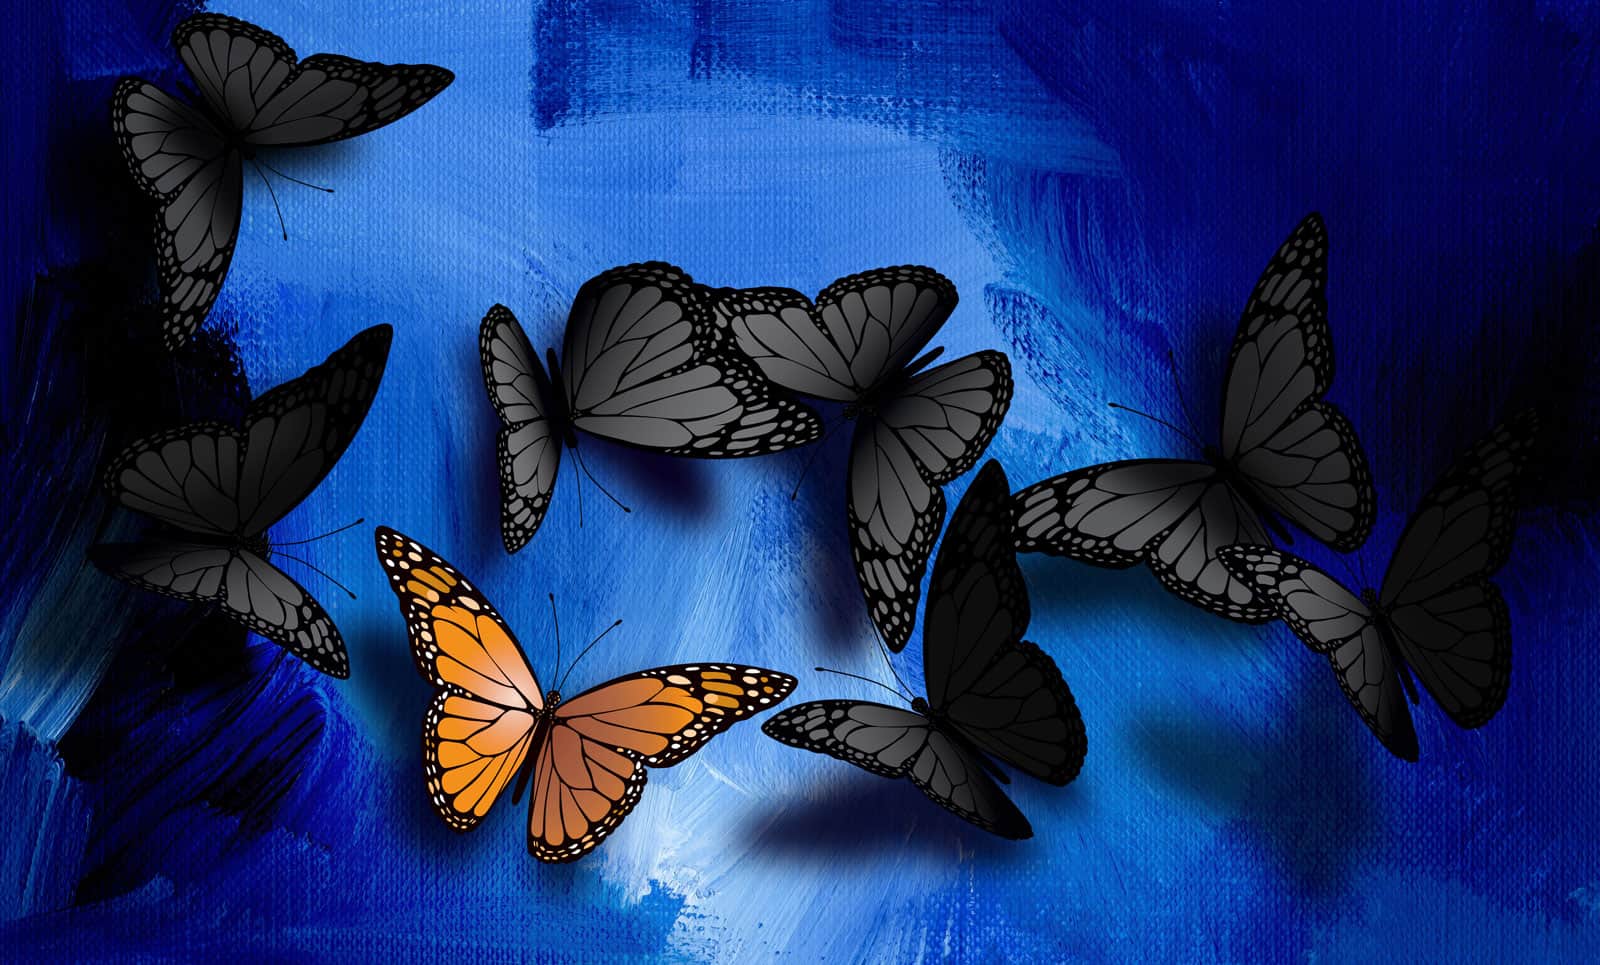 Black Butterflies